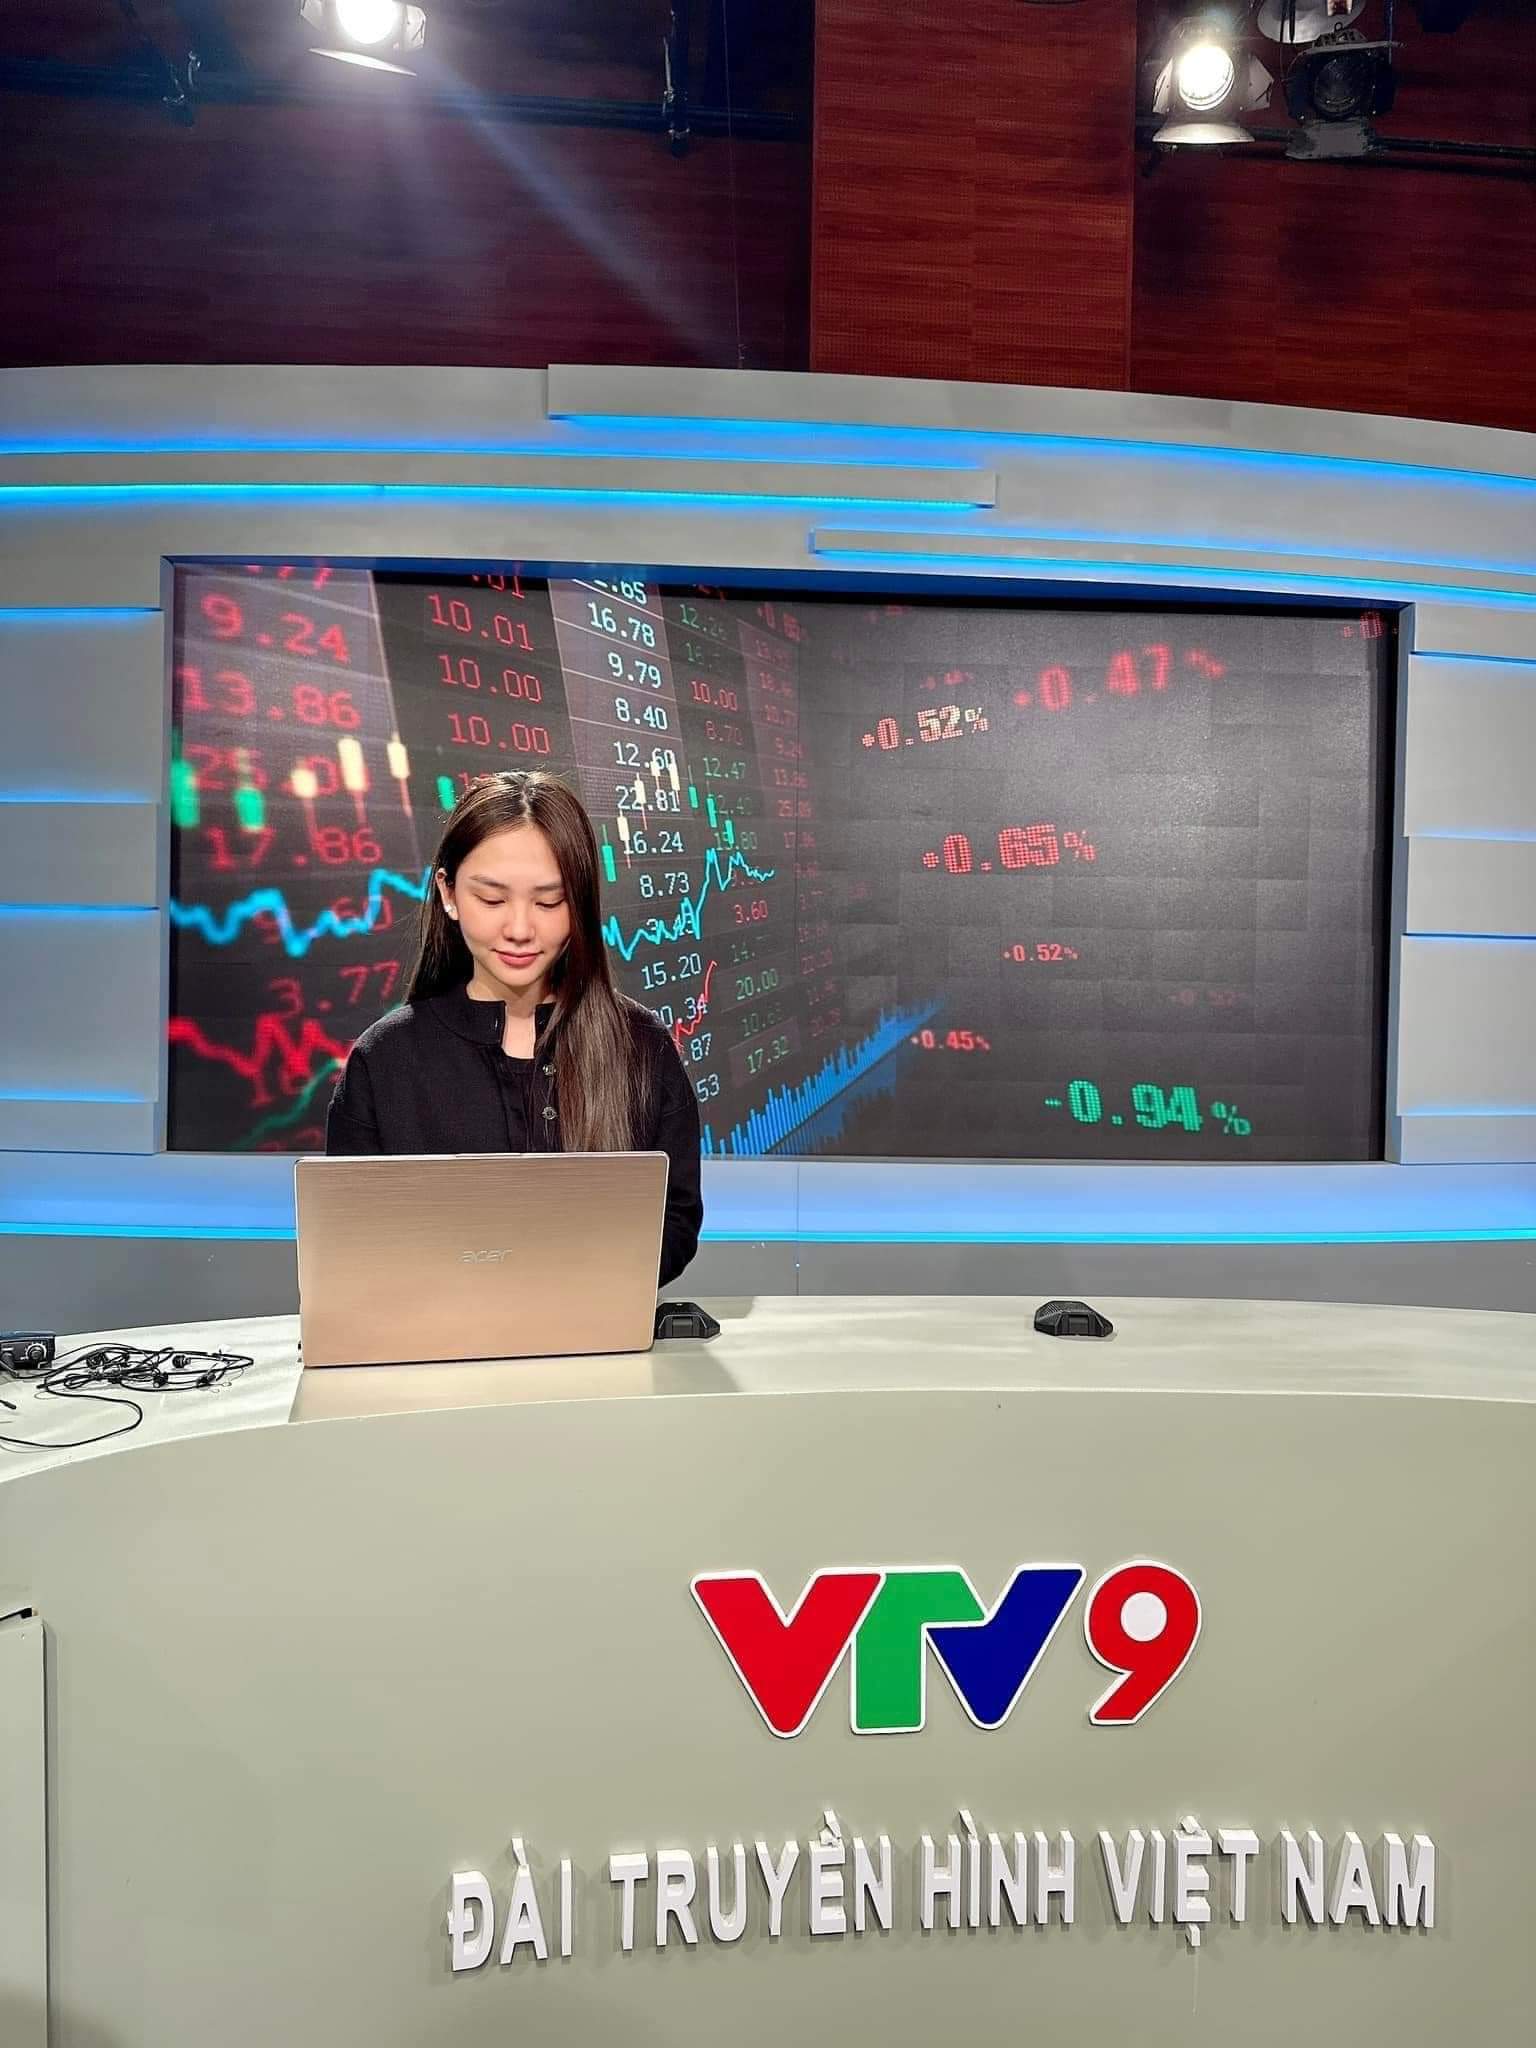 Hoa hậu Mai Phương thử sức vai trò mới tại VTV9 - Đài truyền hình Việt Nam 😍